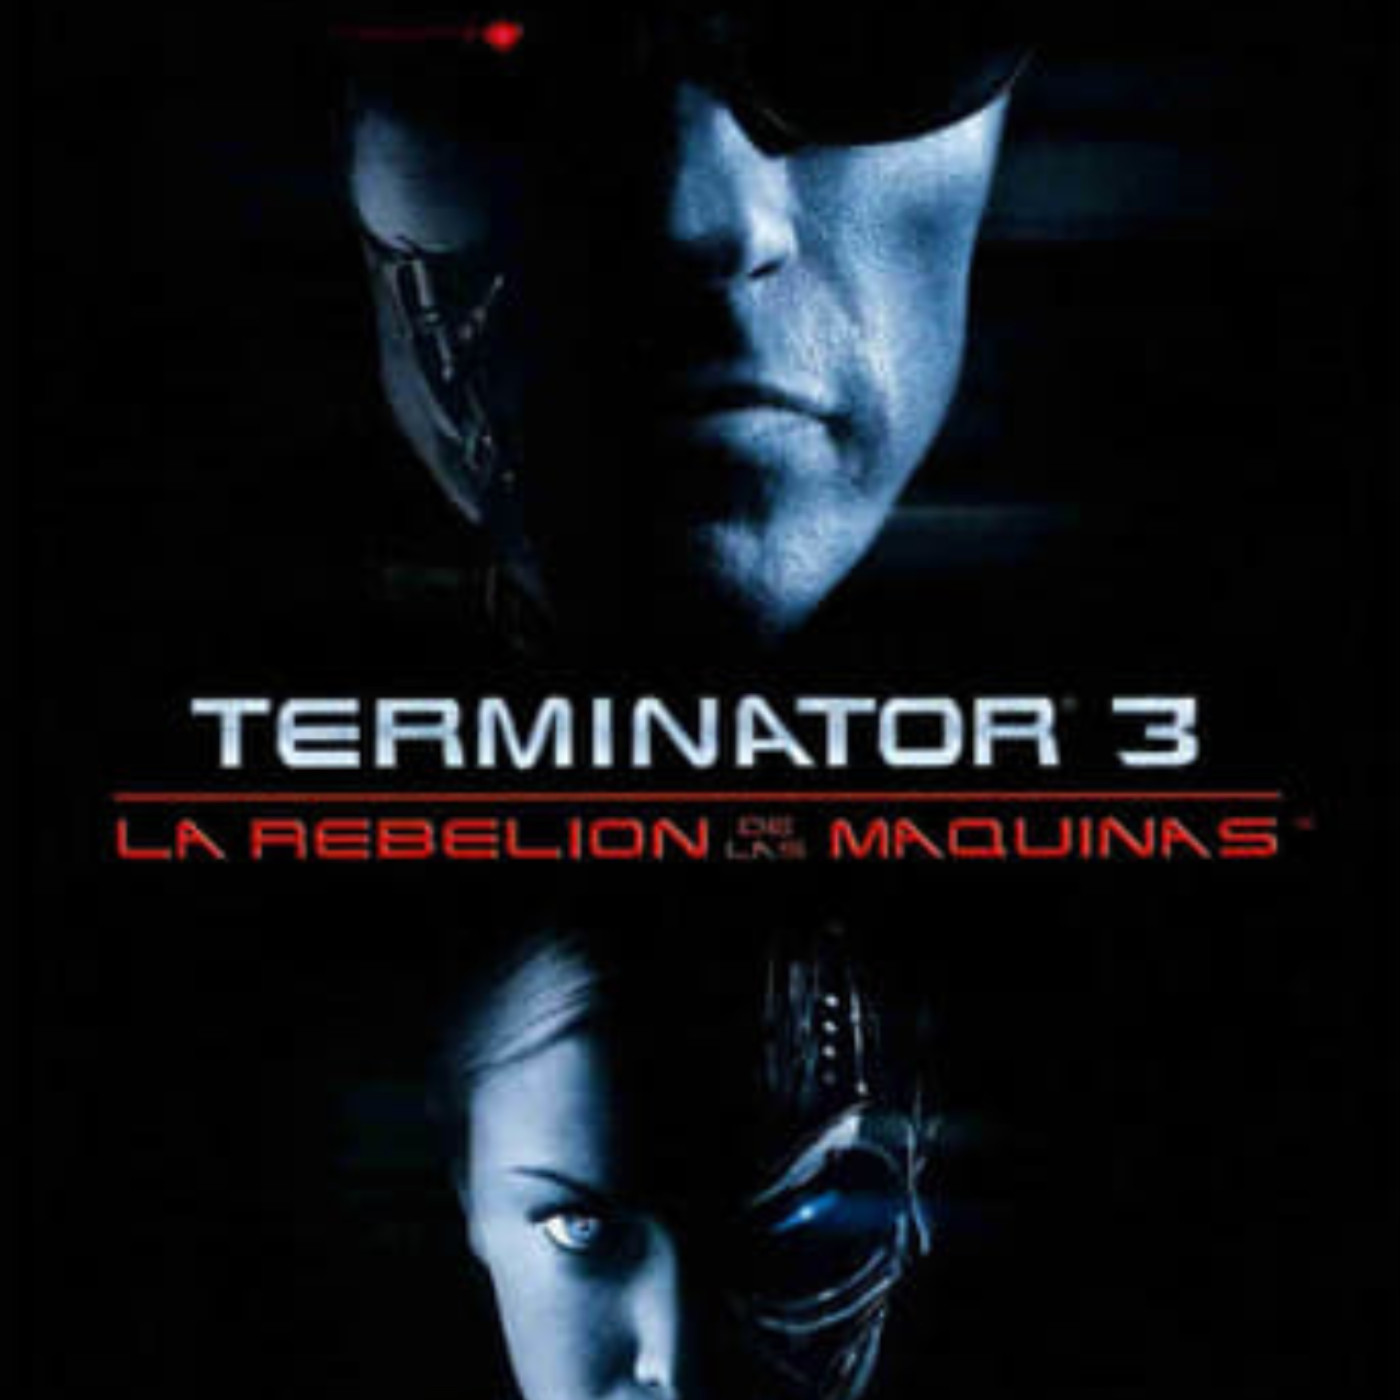 Ver Terminator 3: La rebelión de las máquinas 2003 online gratis en español  y latino | Podcast on SoundOn